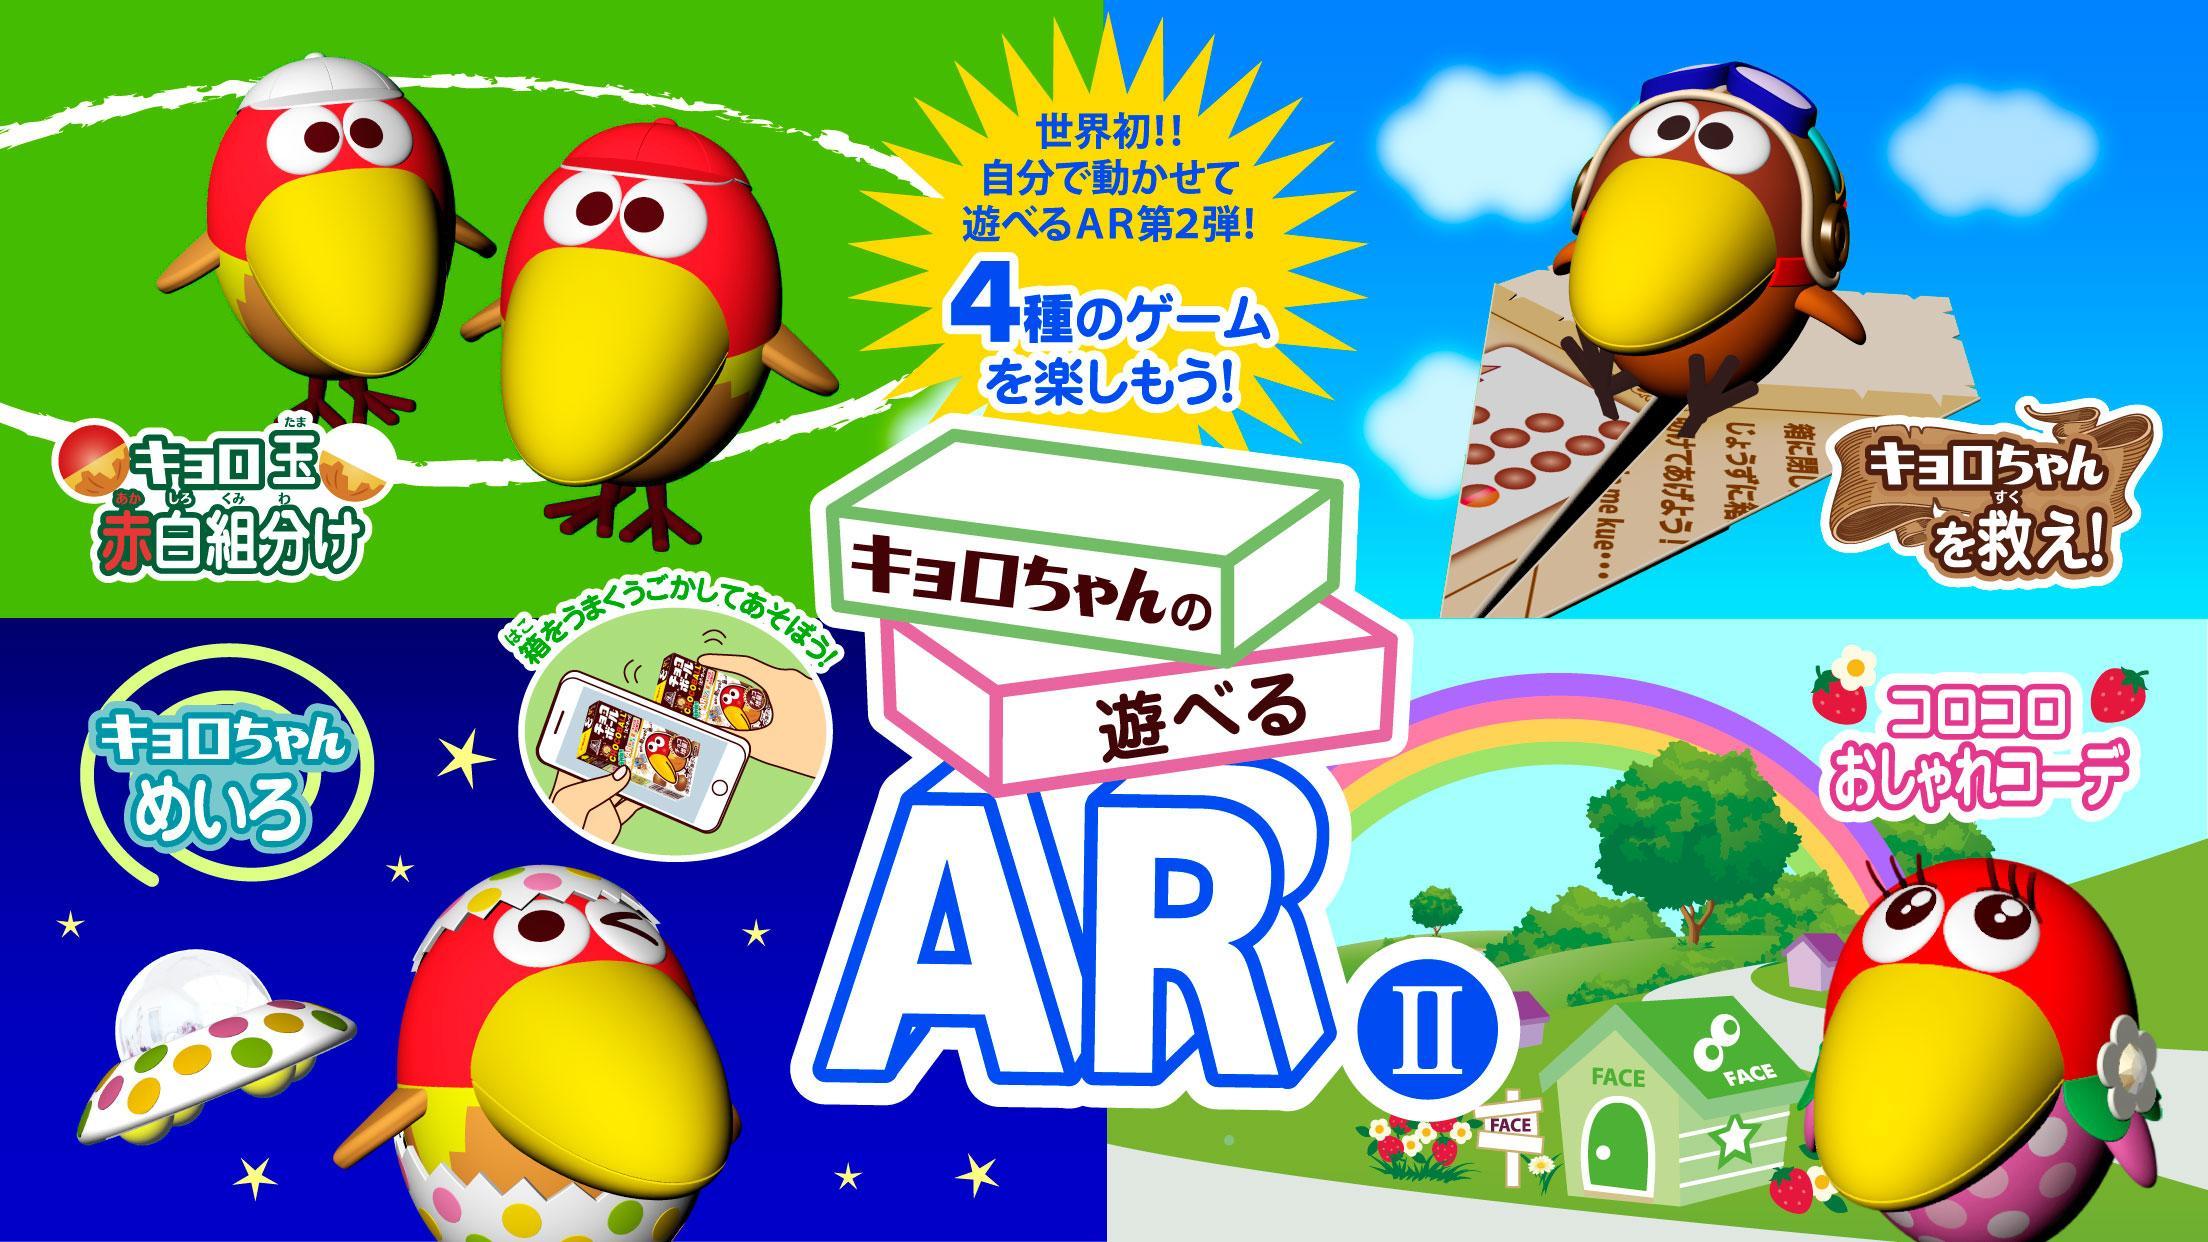 Screenshot 1 of Бесплатная игра AR II от Кёро-чана, в которую можно играть с коробкой шоколадных шариков 1.2